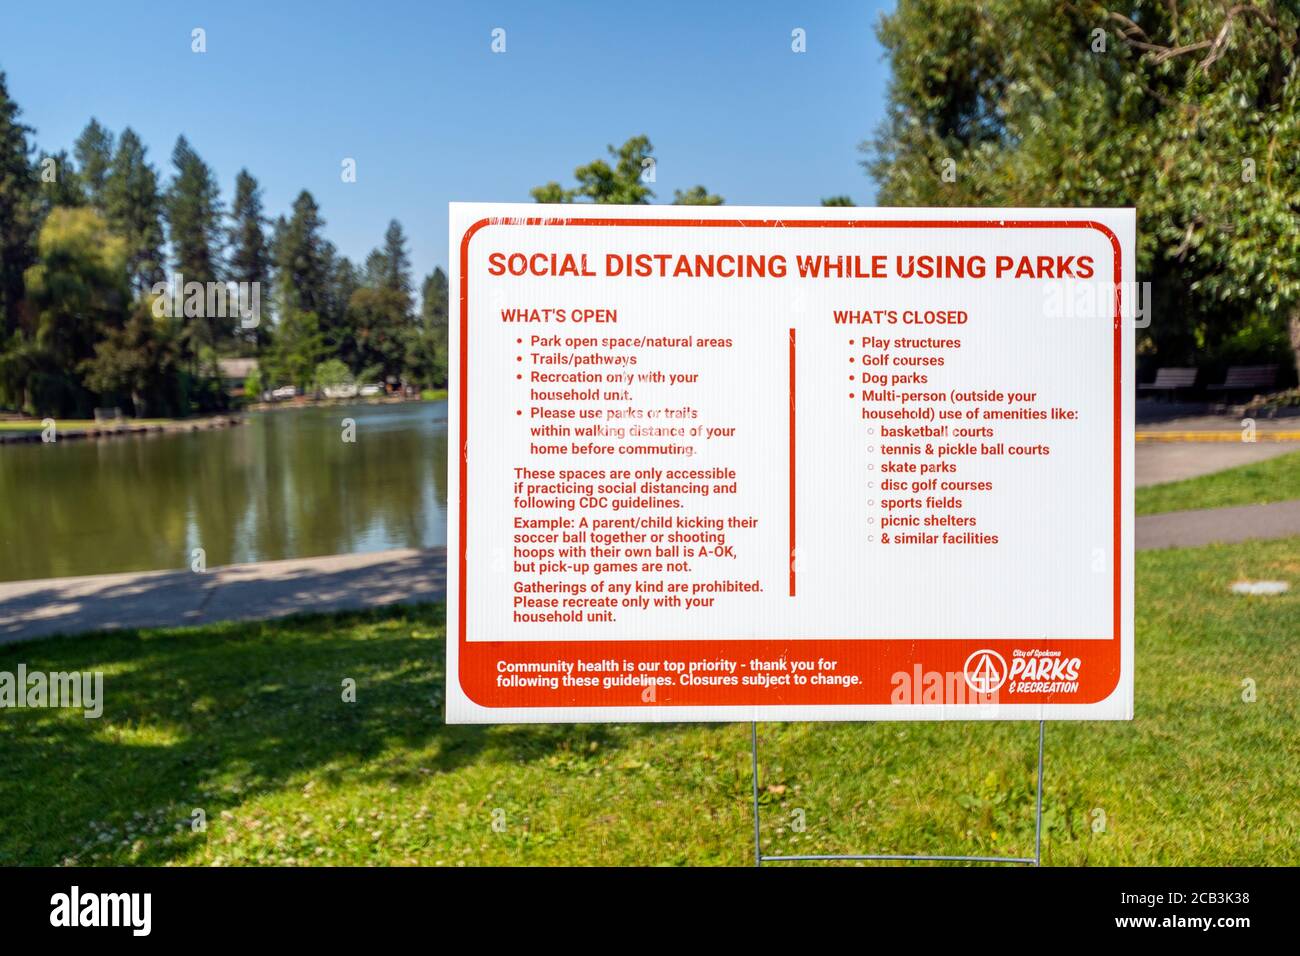 Un panneau de parc de la ville dans le parc public Manito de Spokane Washington offre des informations de distance sociale et des directives pour la santé à Spokane, Washington. Banque D'Images